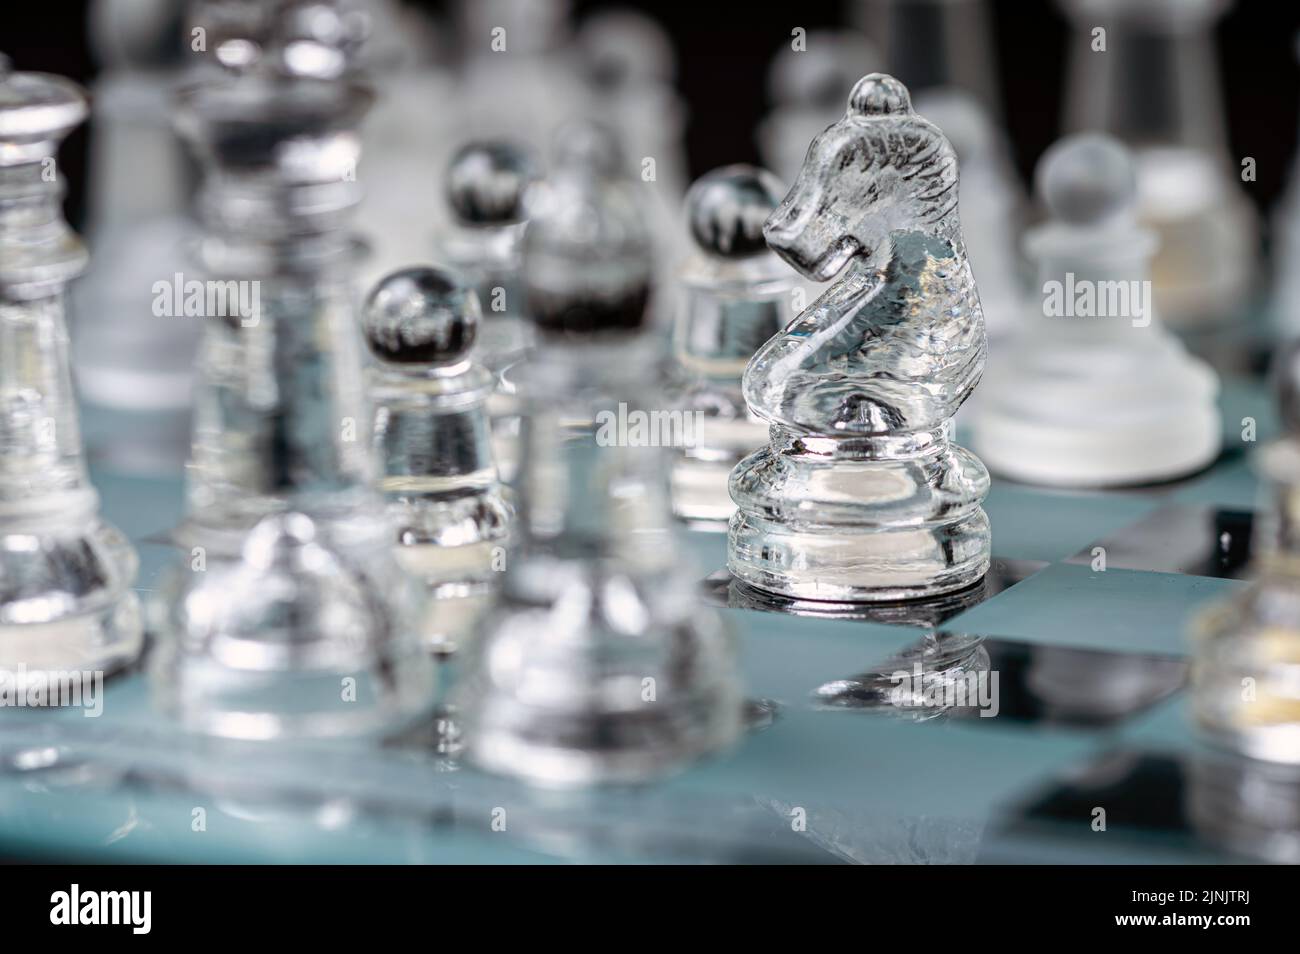 jeu d'échecs en verre transparent sur fond sombre, mise au point sélective sur la pièce de chevalier, gros plan Banque D'Images